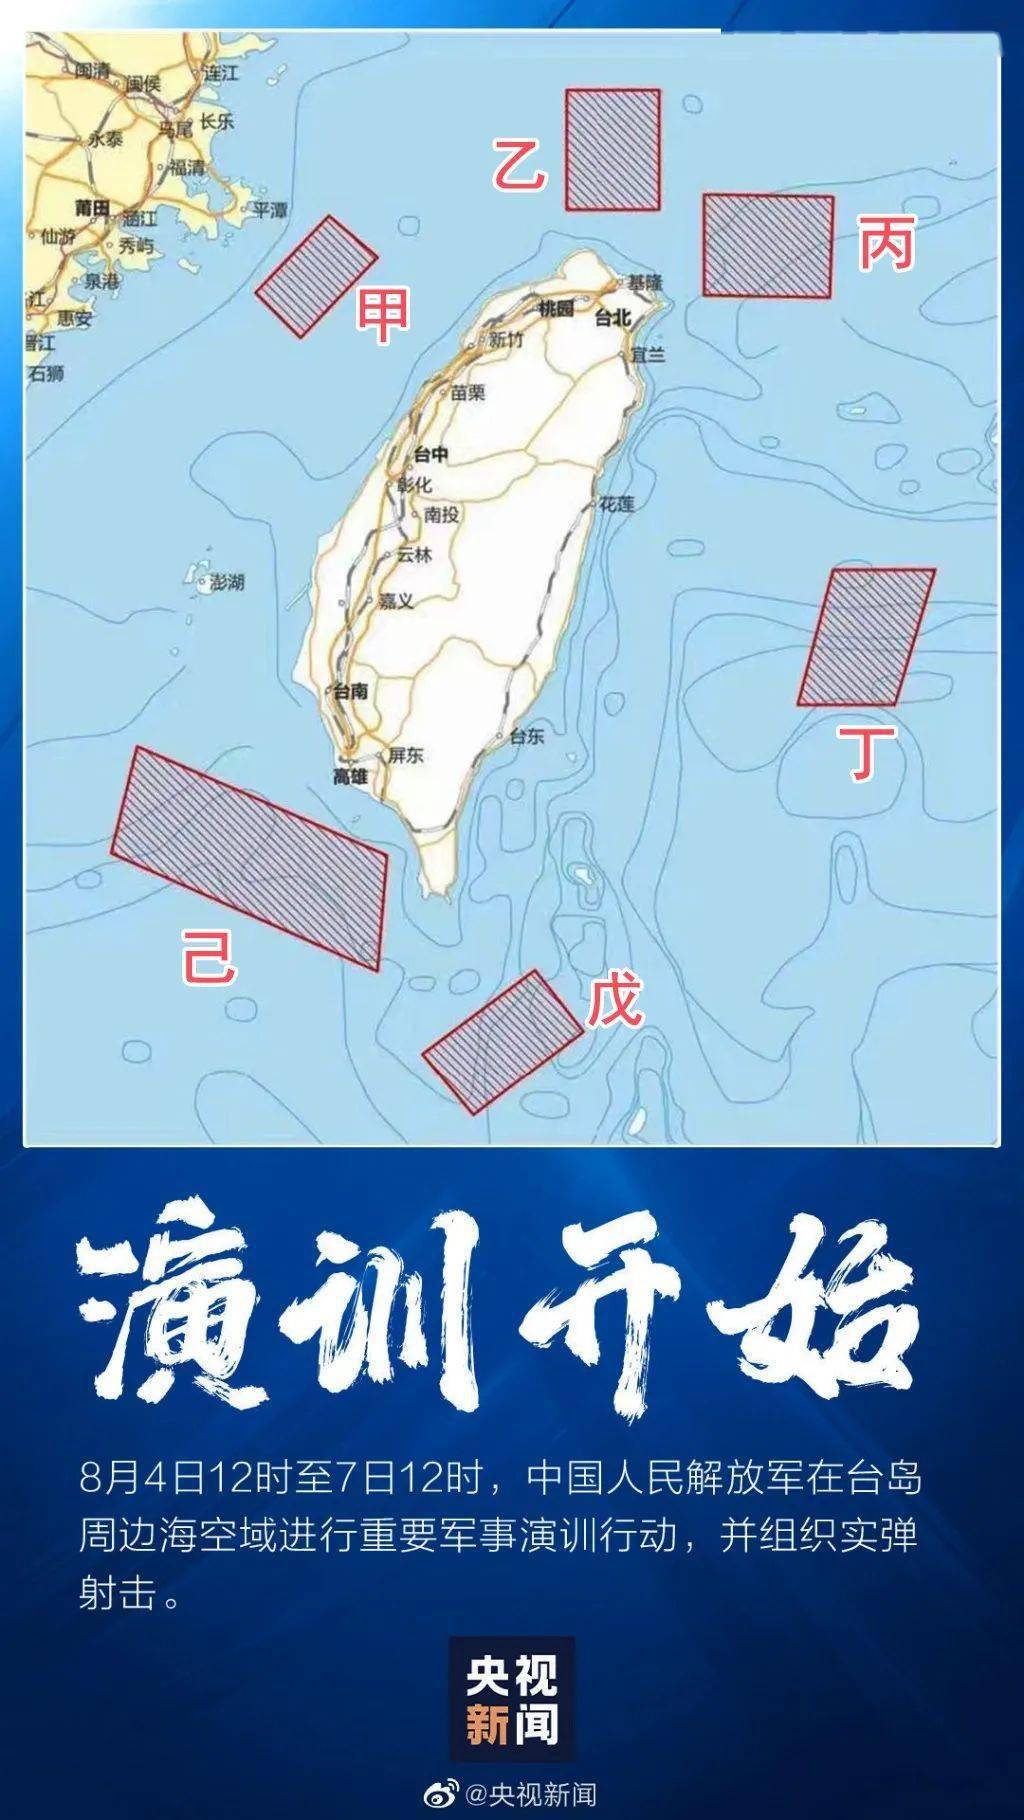 六路包围 从我军的视野看台湾岛 解放军常规导弹穿越台岛意味什么 解放军常规导弹穿越台岛意味着什么 台北